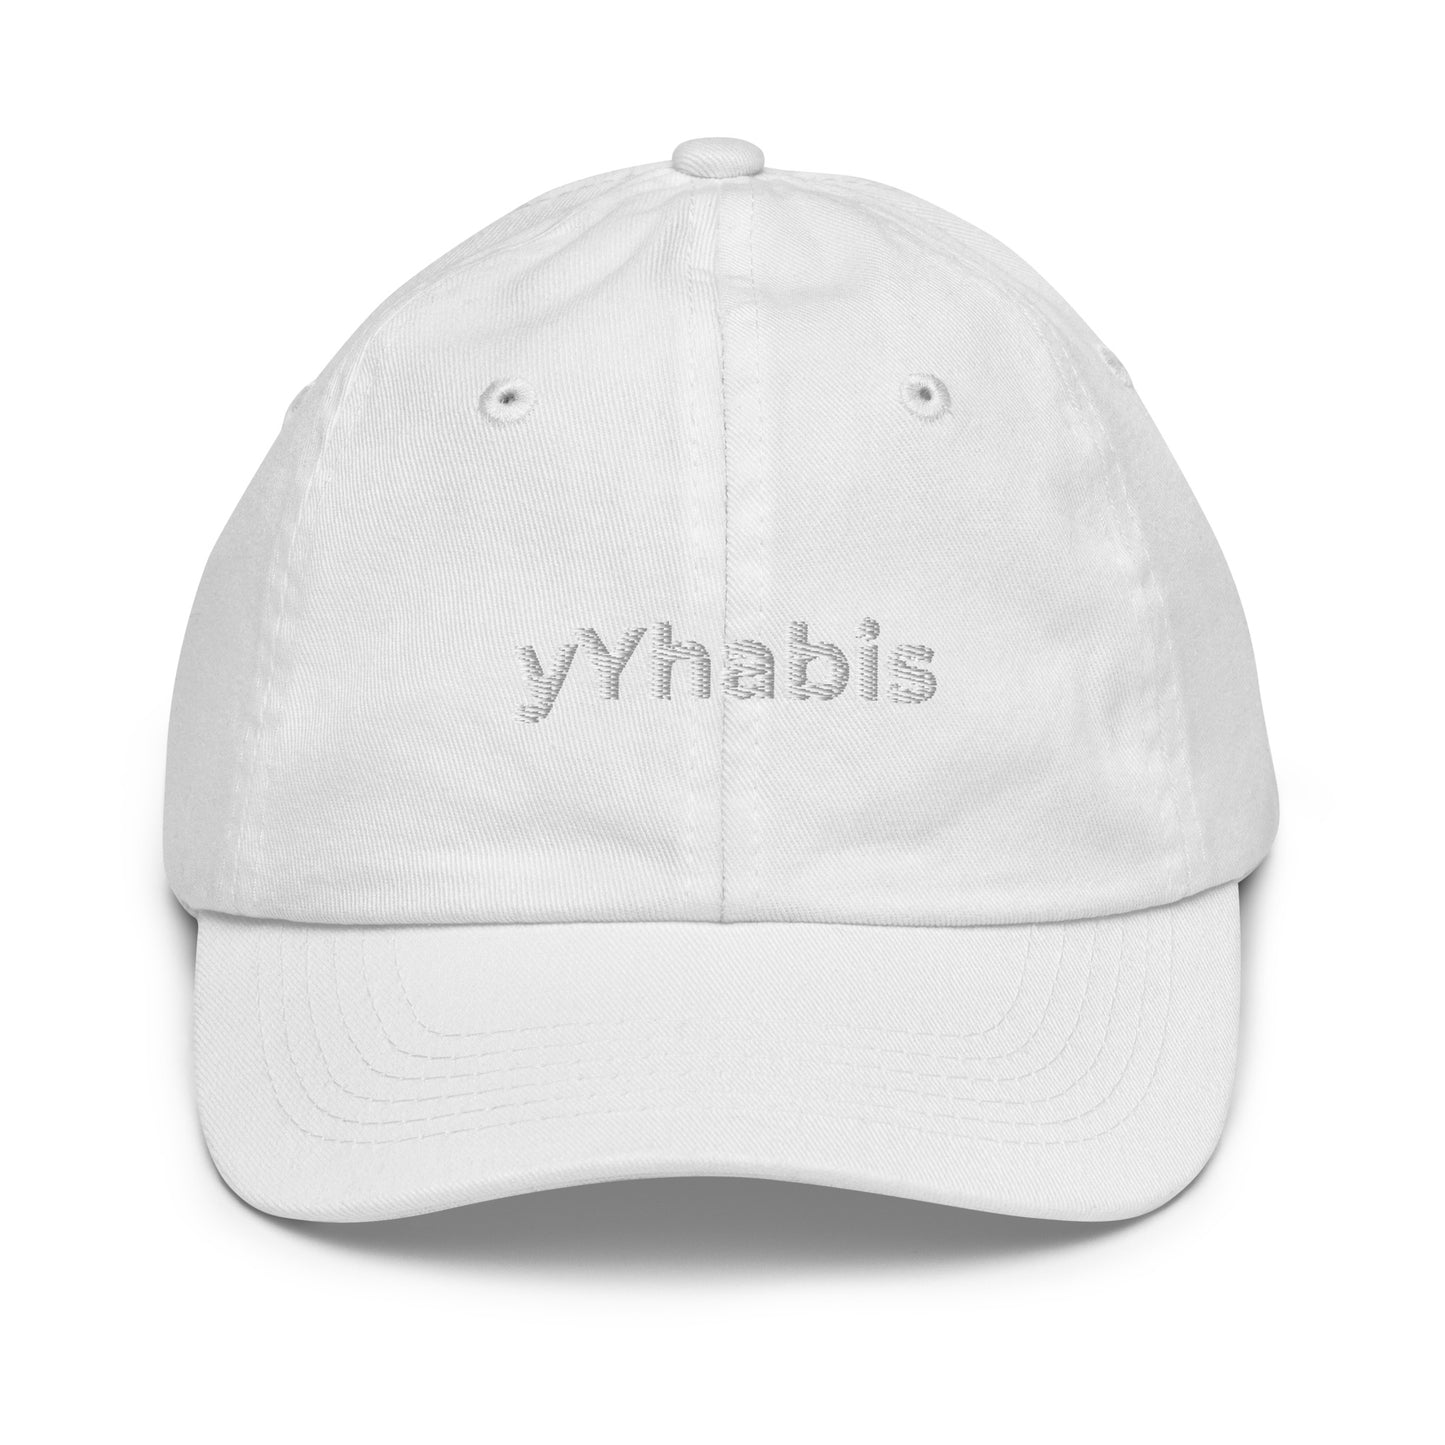 yYhabis Littles Ball Cap